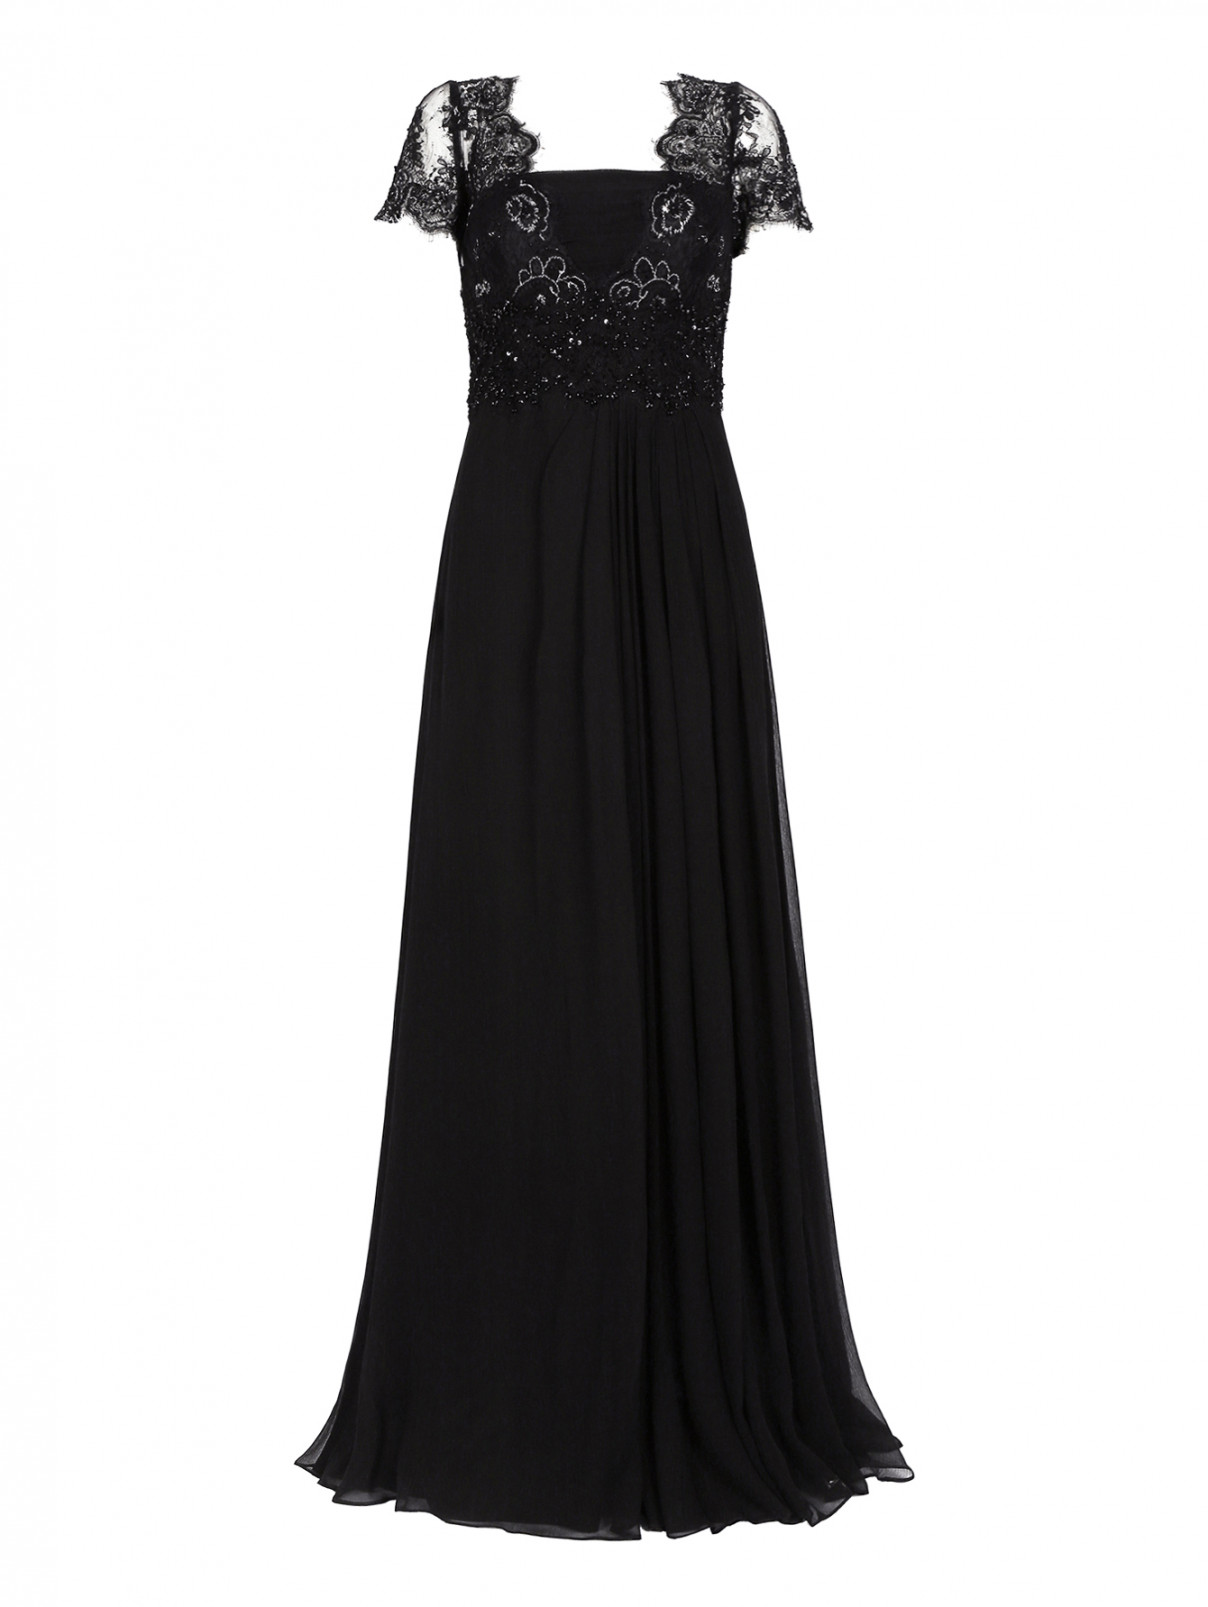 Платье-макси из шелка, декорированное кружевом и бисером Rosa Clara  –  Общий вид  – Цвет:  Черный